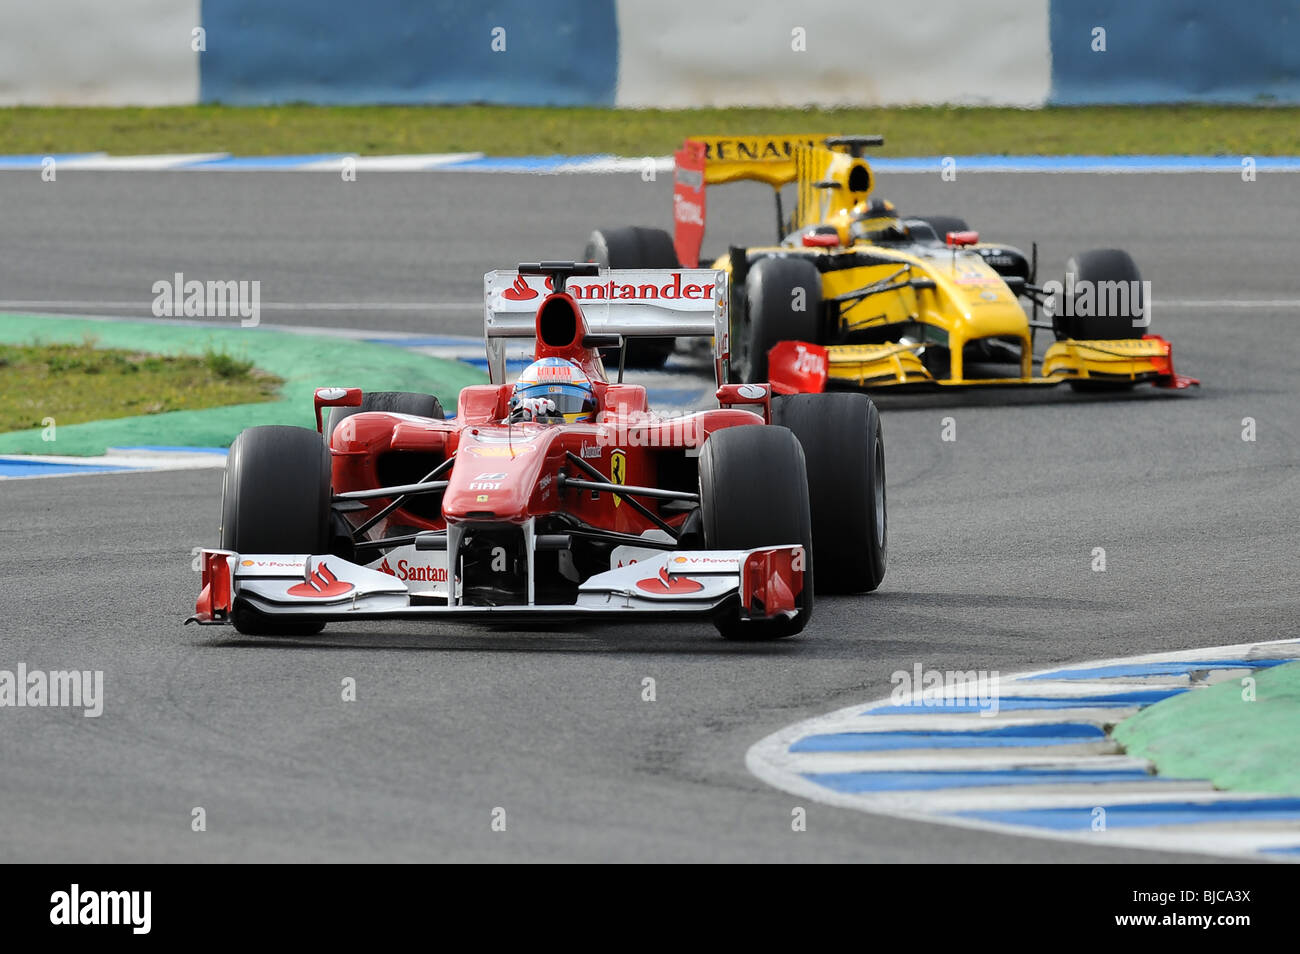 F1 Fórmula 1 Renault ferrari fernando alonso Foto de stock